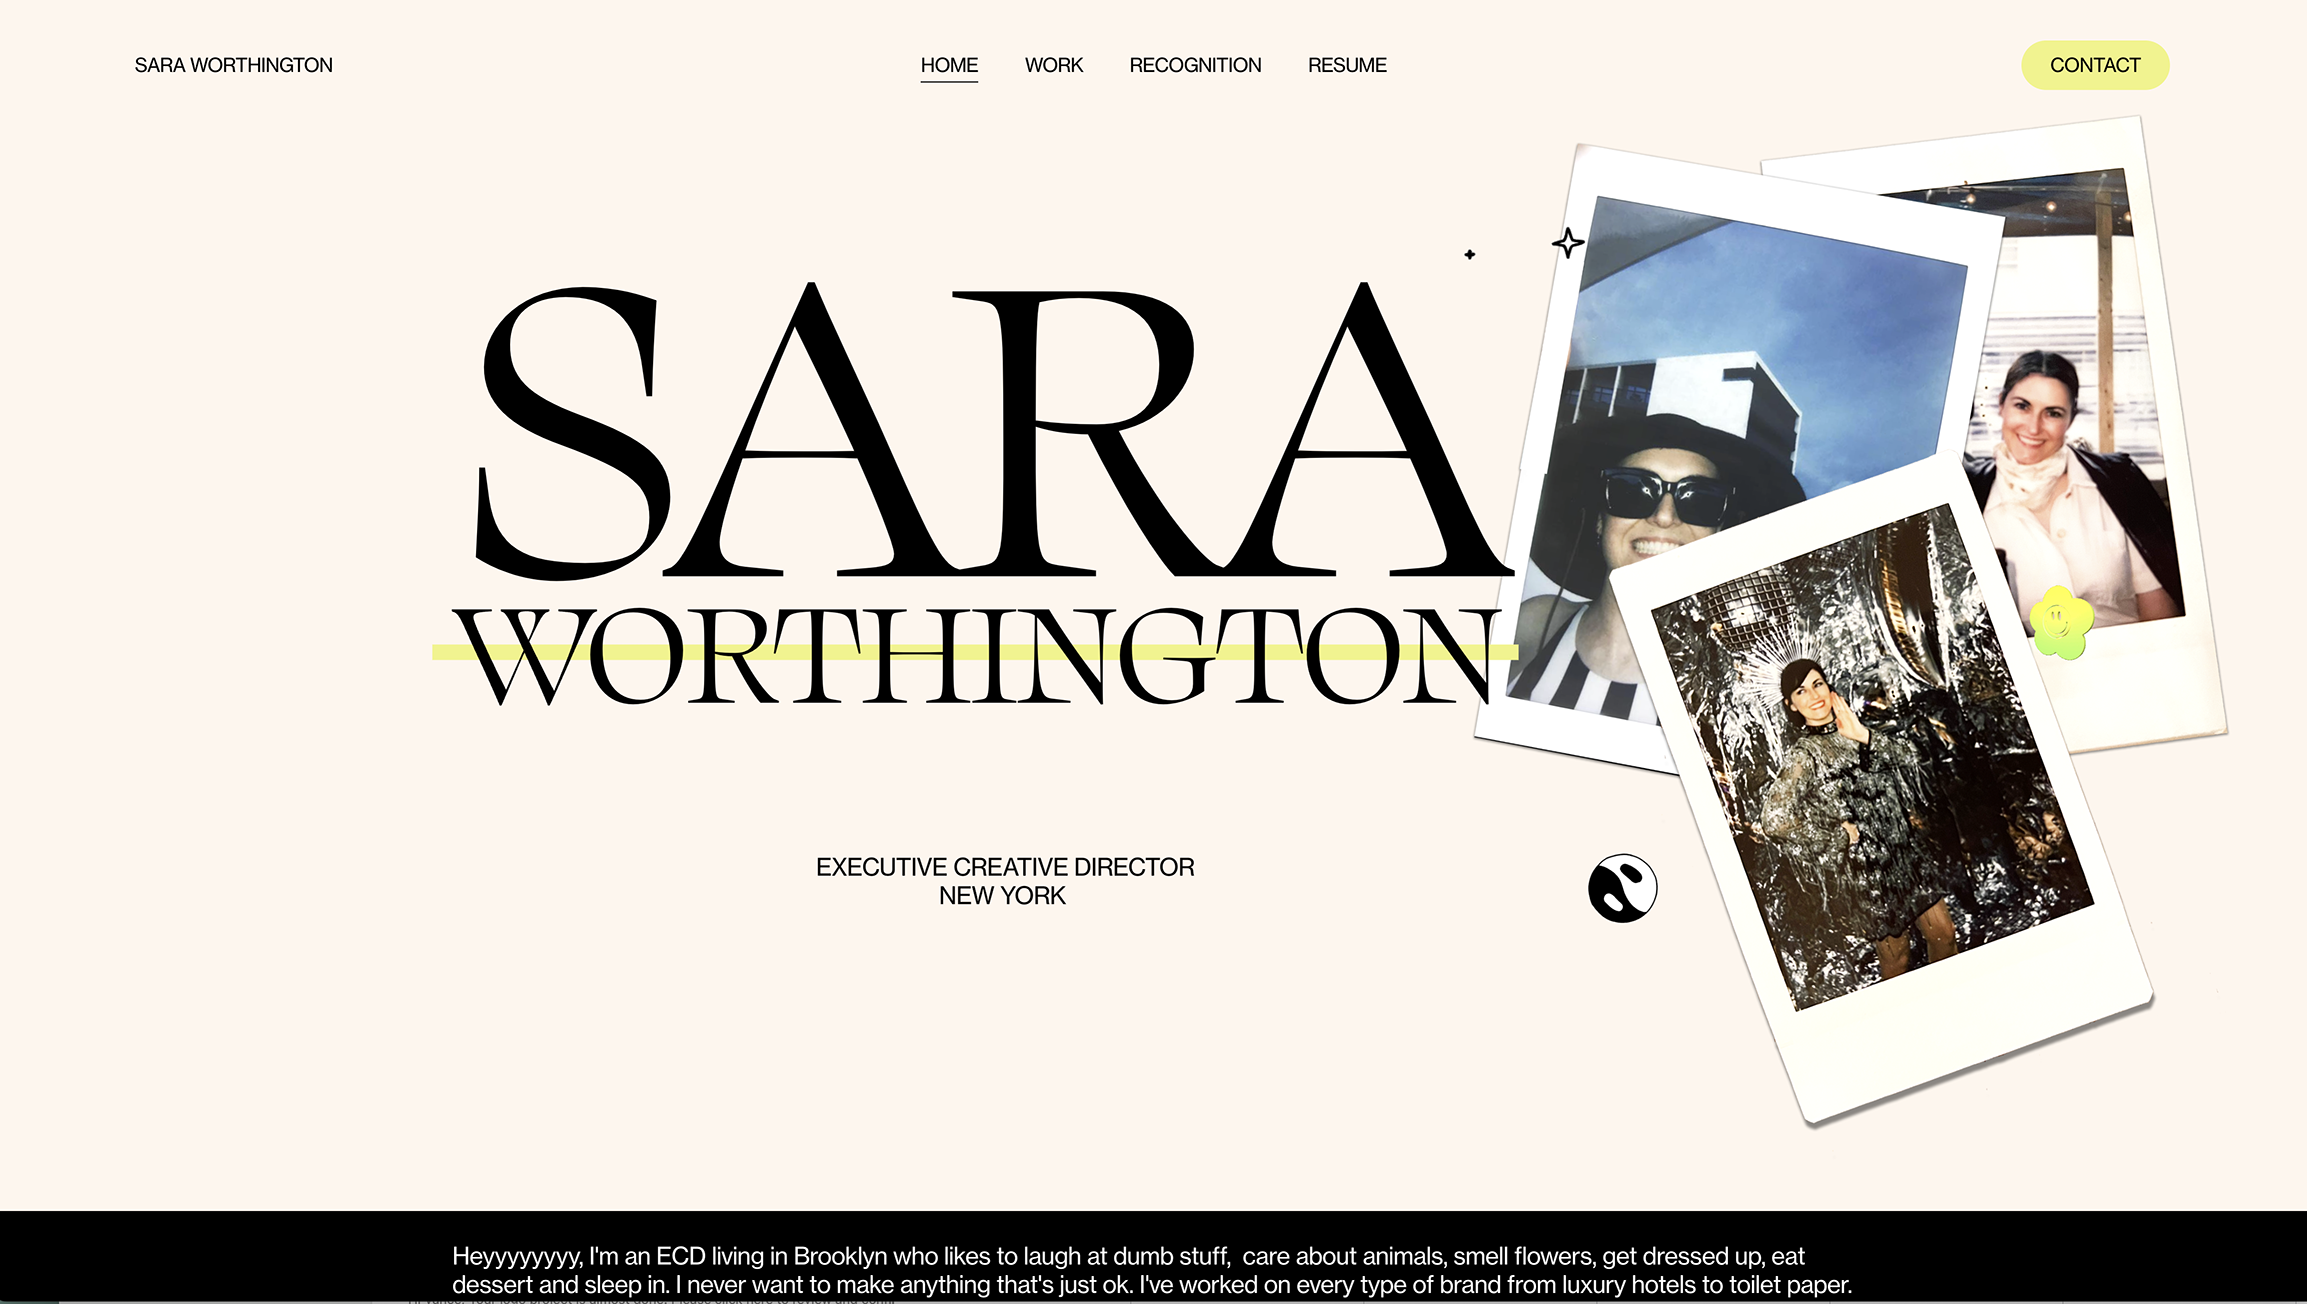 saraworthington.png